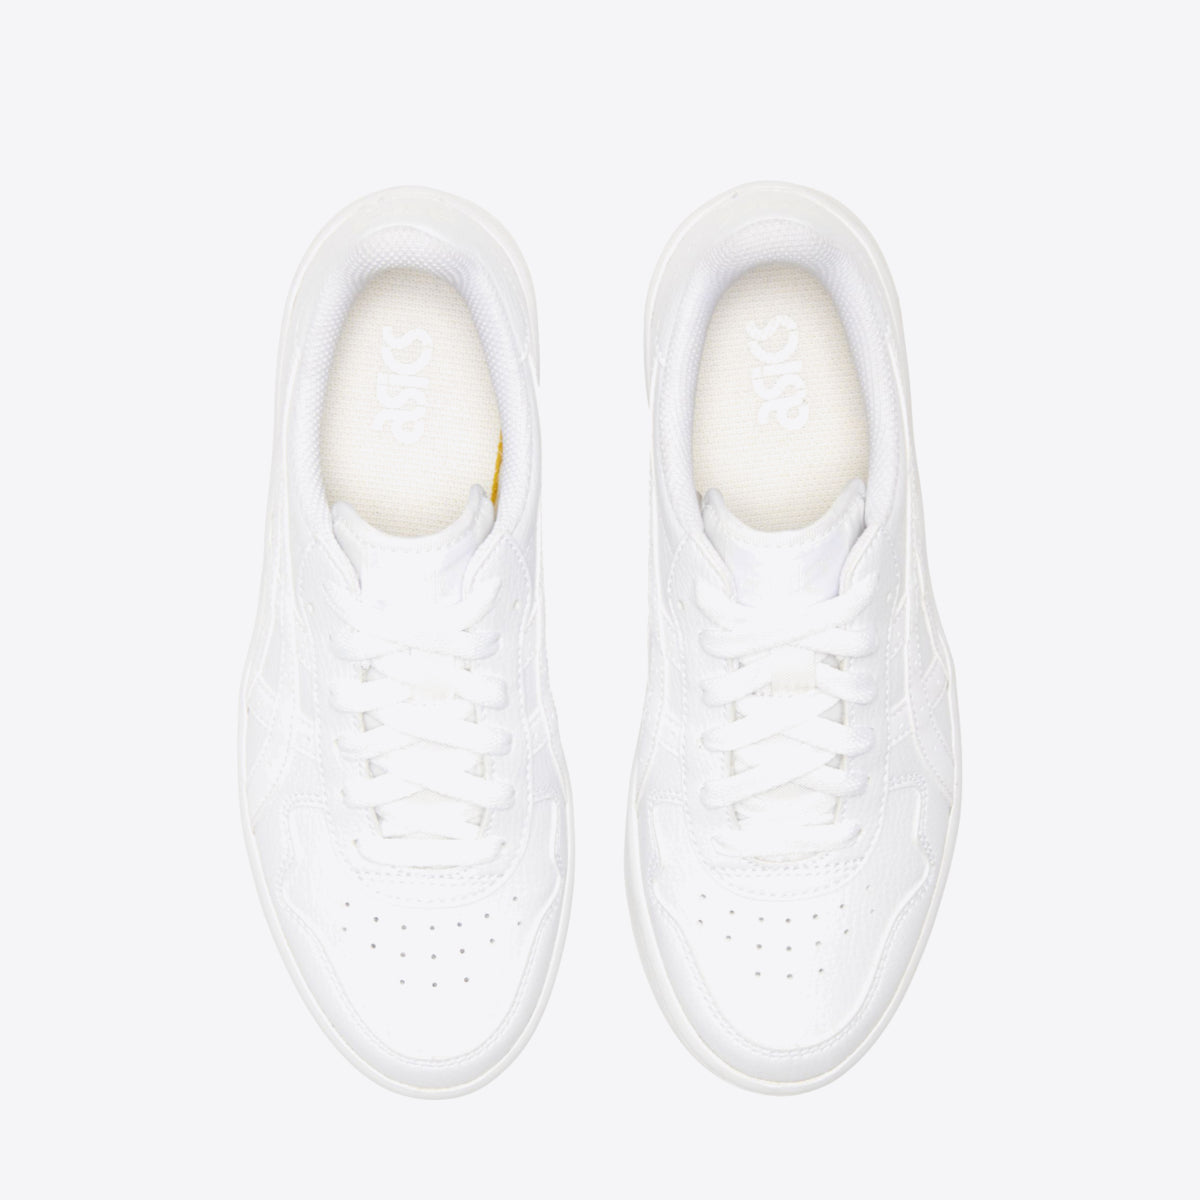  Japan S Platform Sneaker - Women's White/White